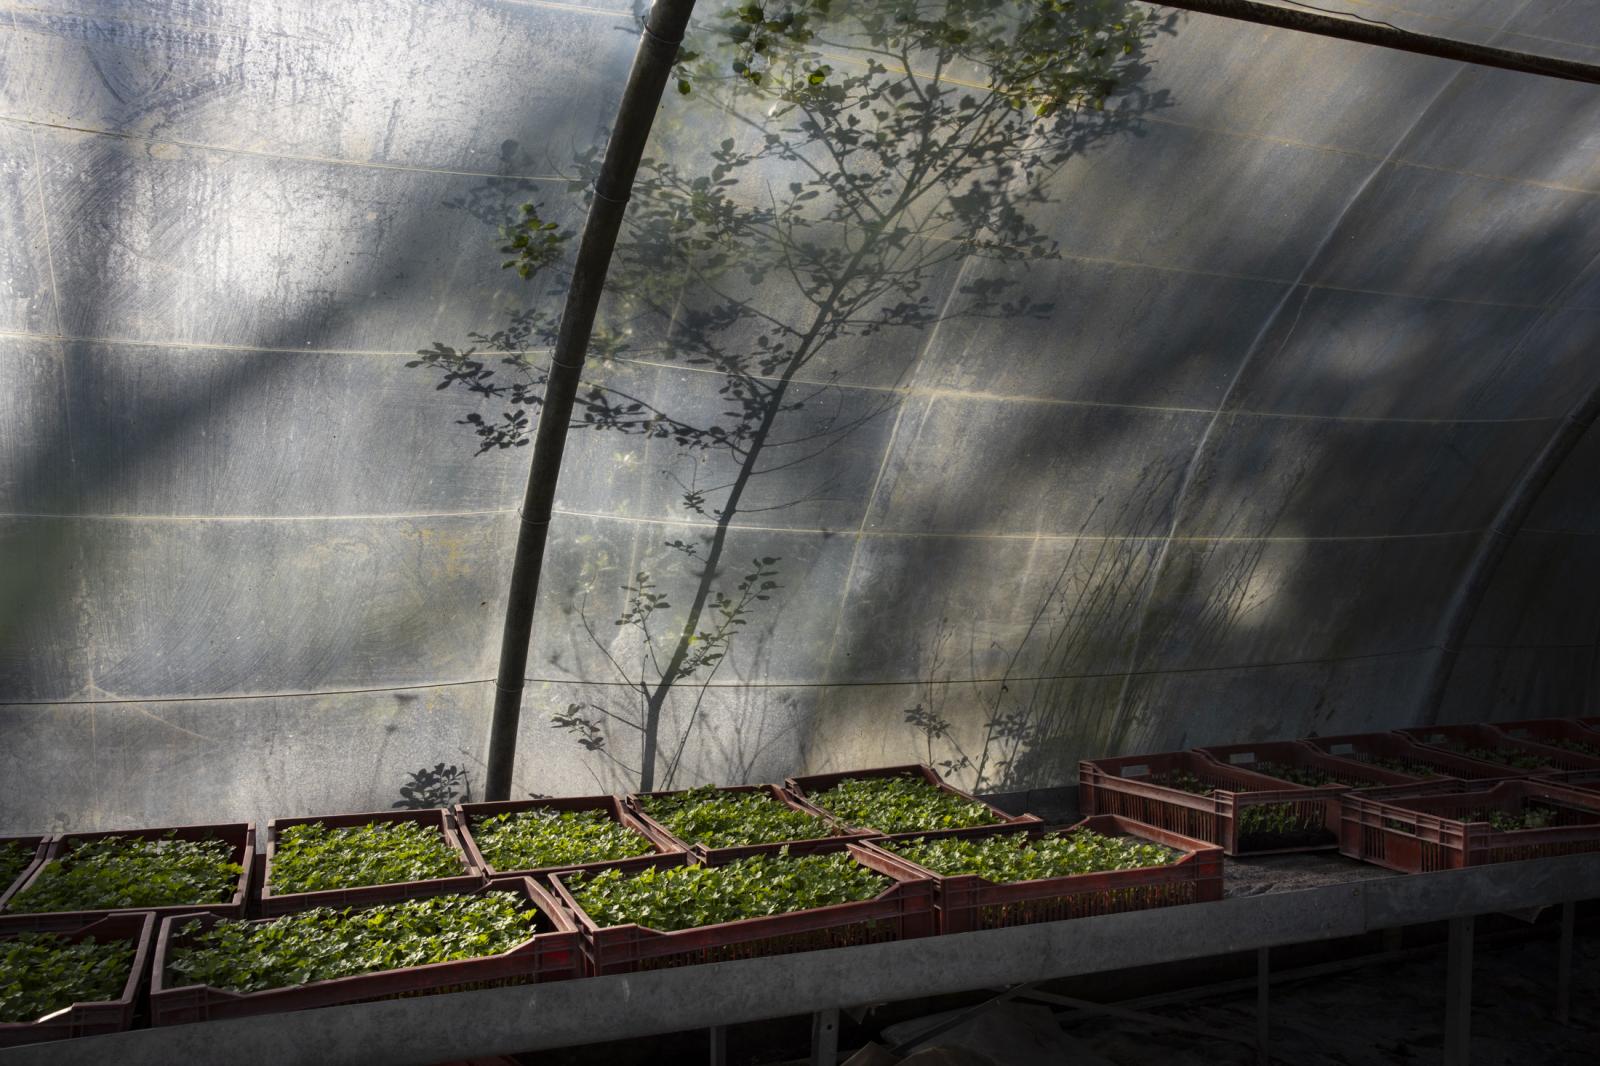 The greenhouse of La Ferme des ...e de France, France, April 2020